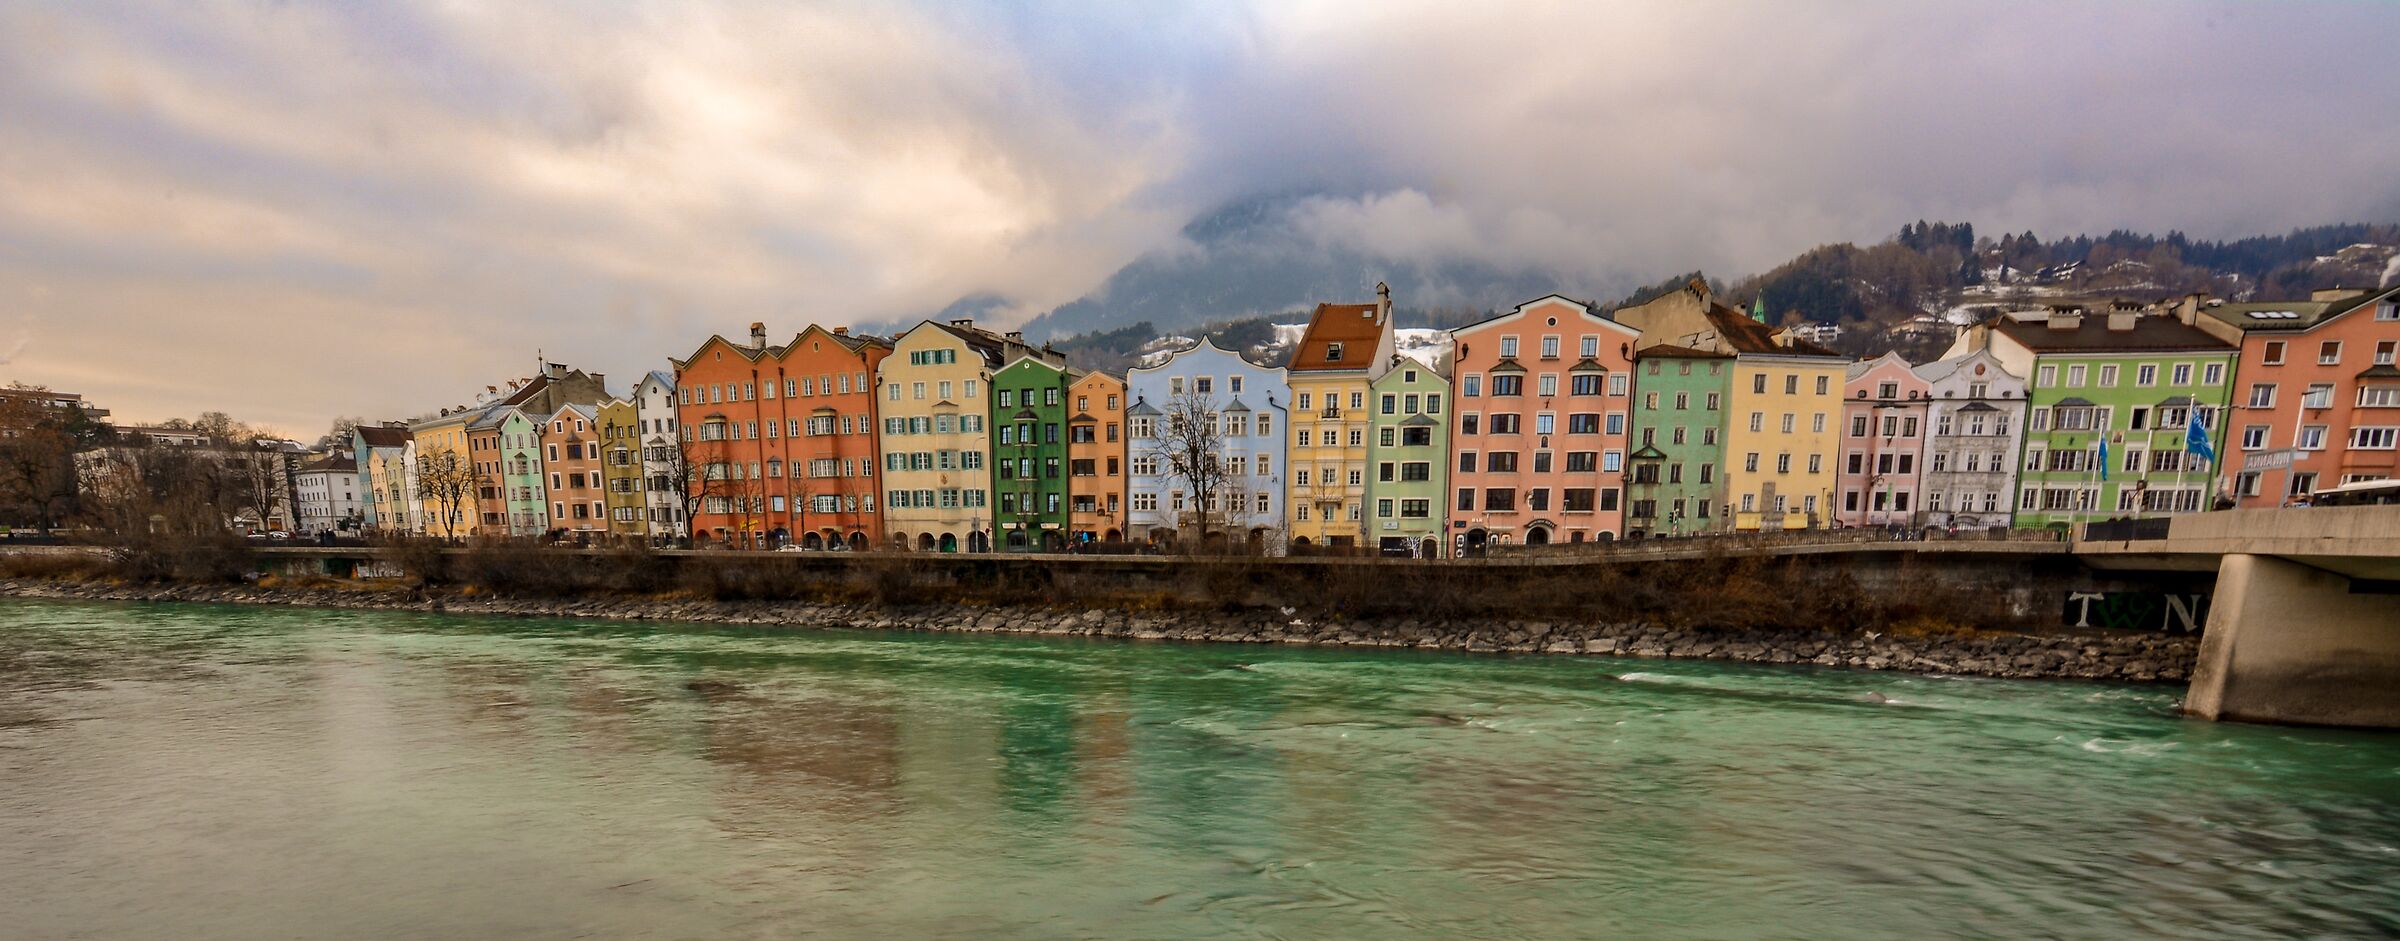 Ponte sull'Inn - Innsbruck...